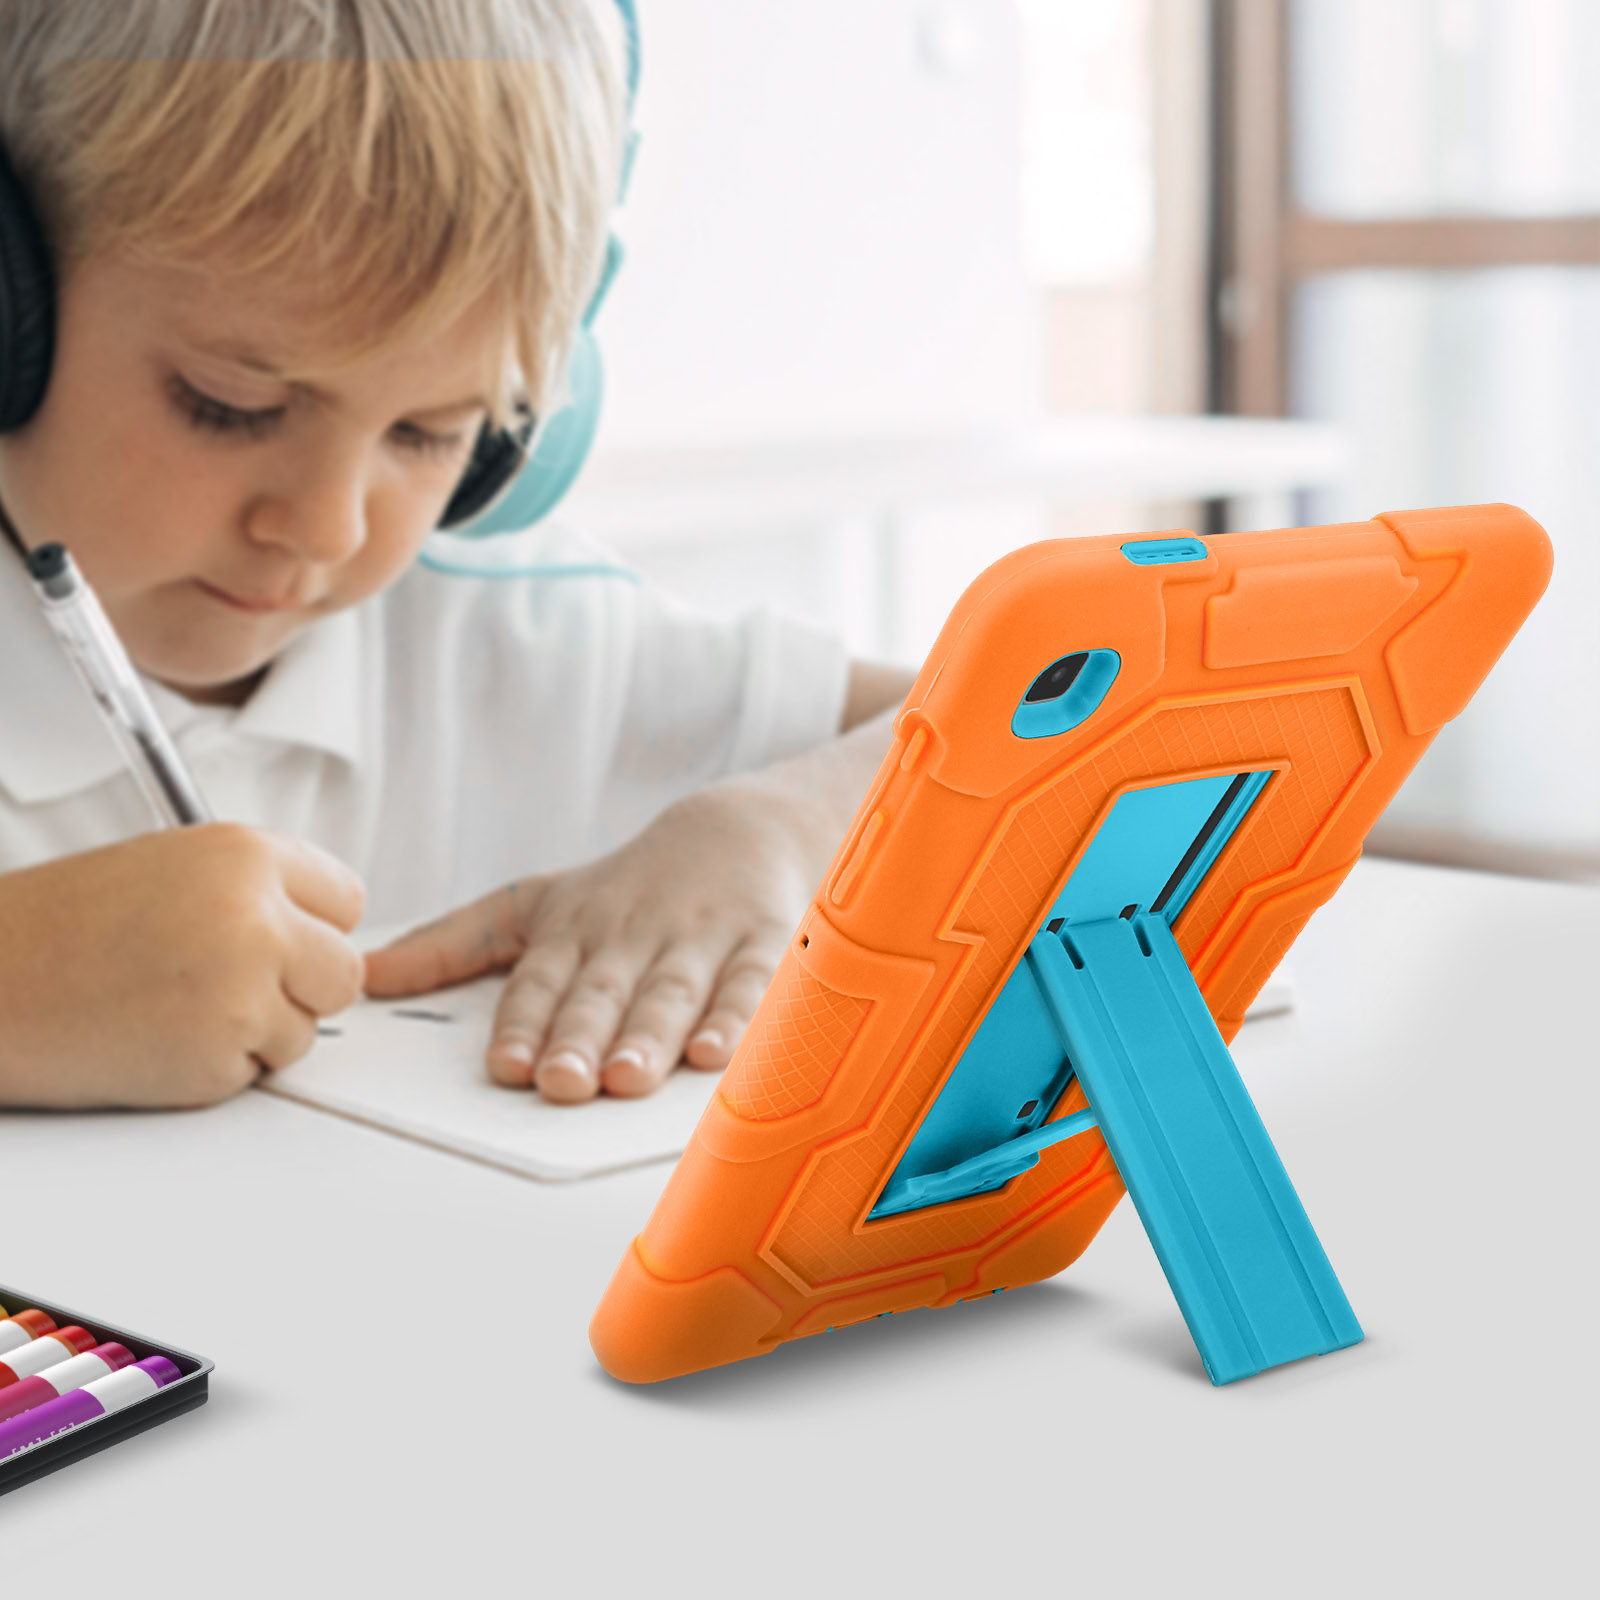 AVIZAR Kick Backcover Silikongel, für Orange Series Polycarbonat und Samsung Schutzhüllen